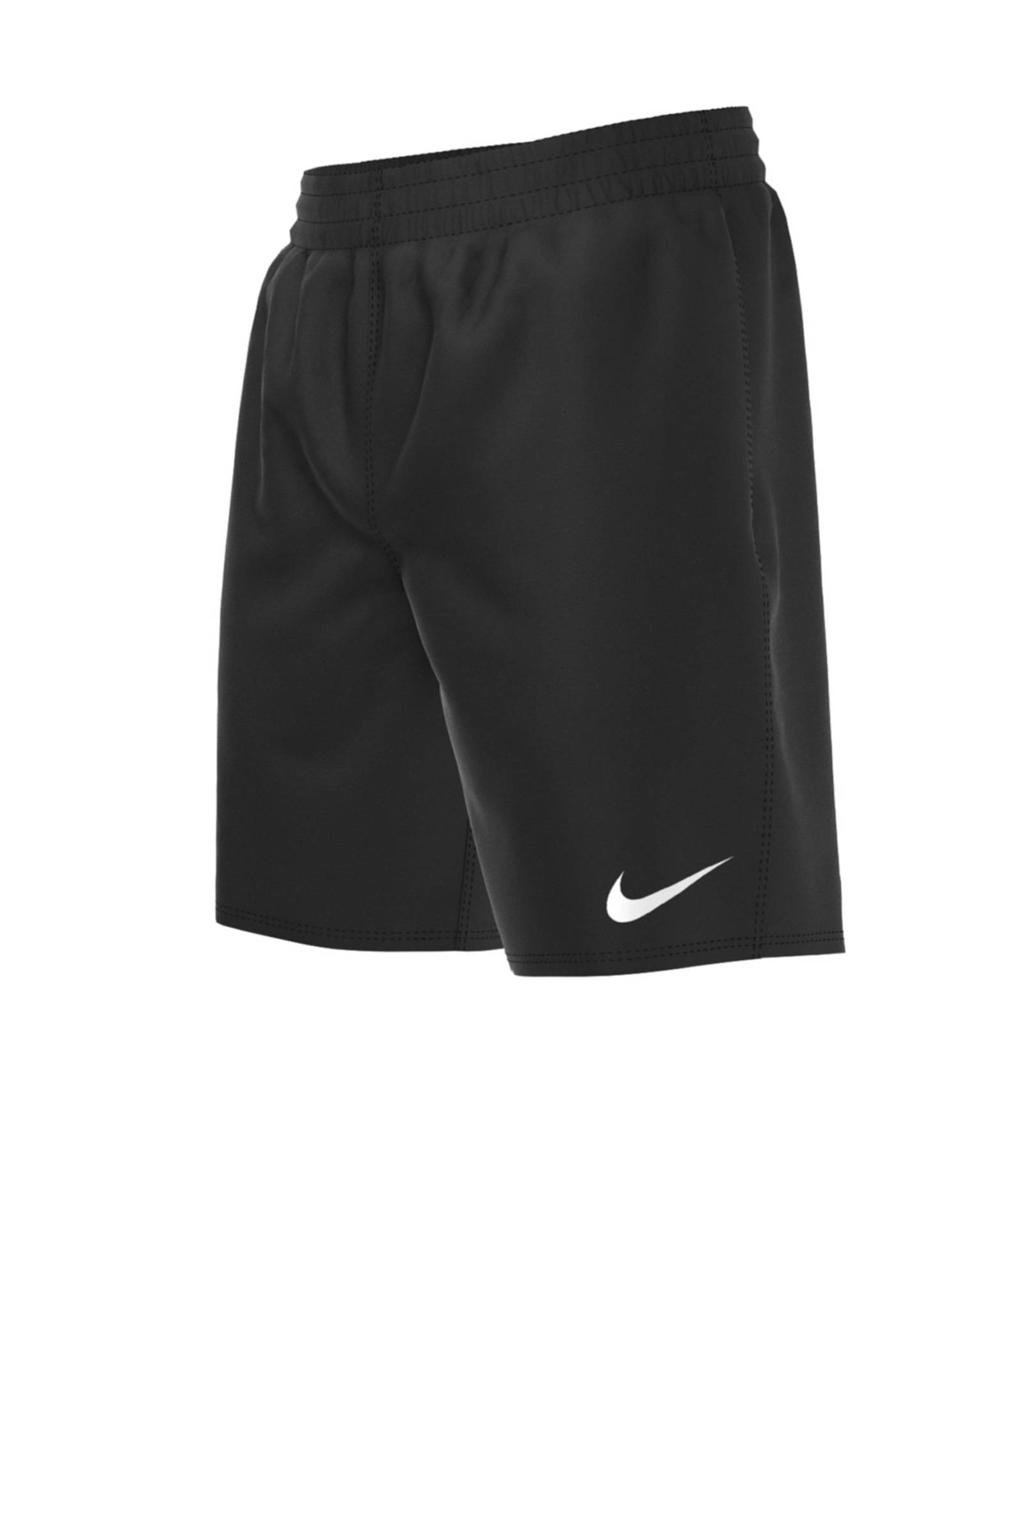 Nike zwemshort Essential zwart